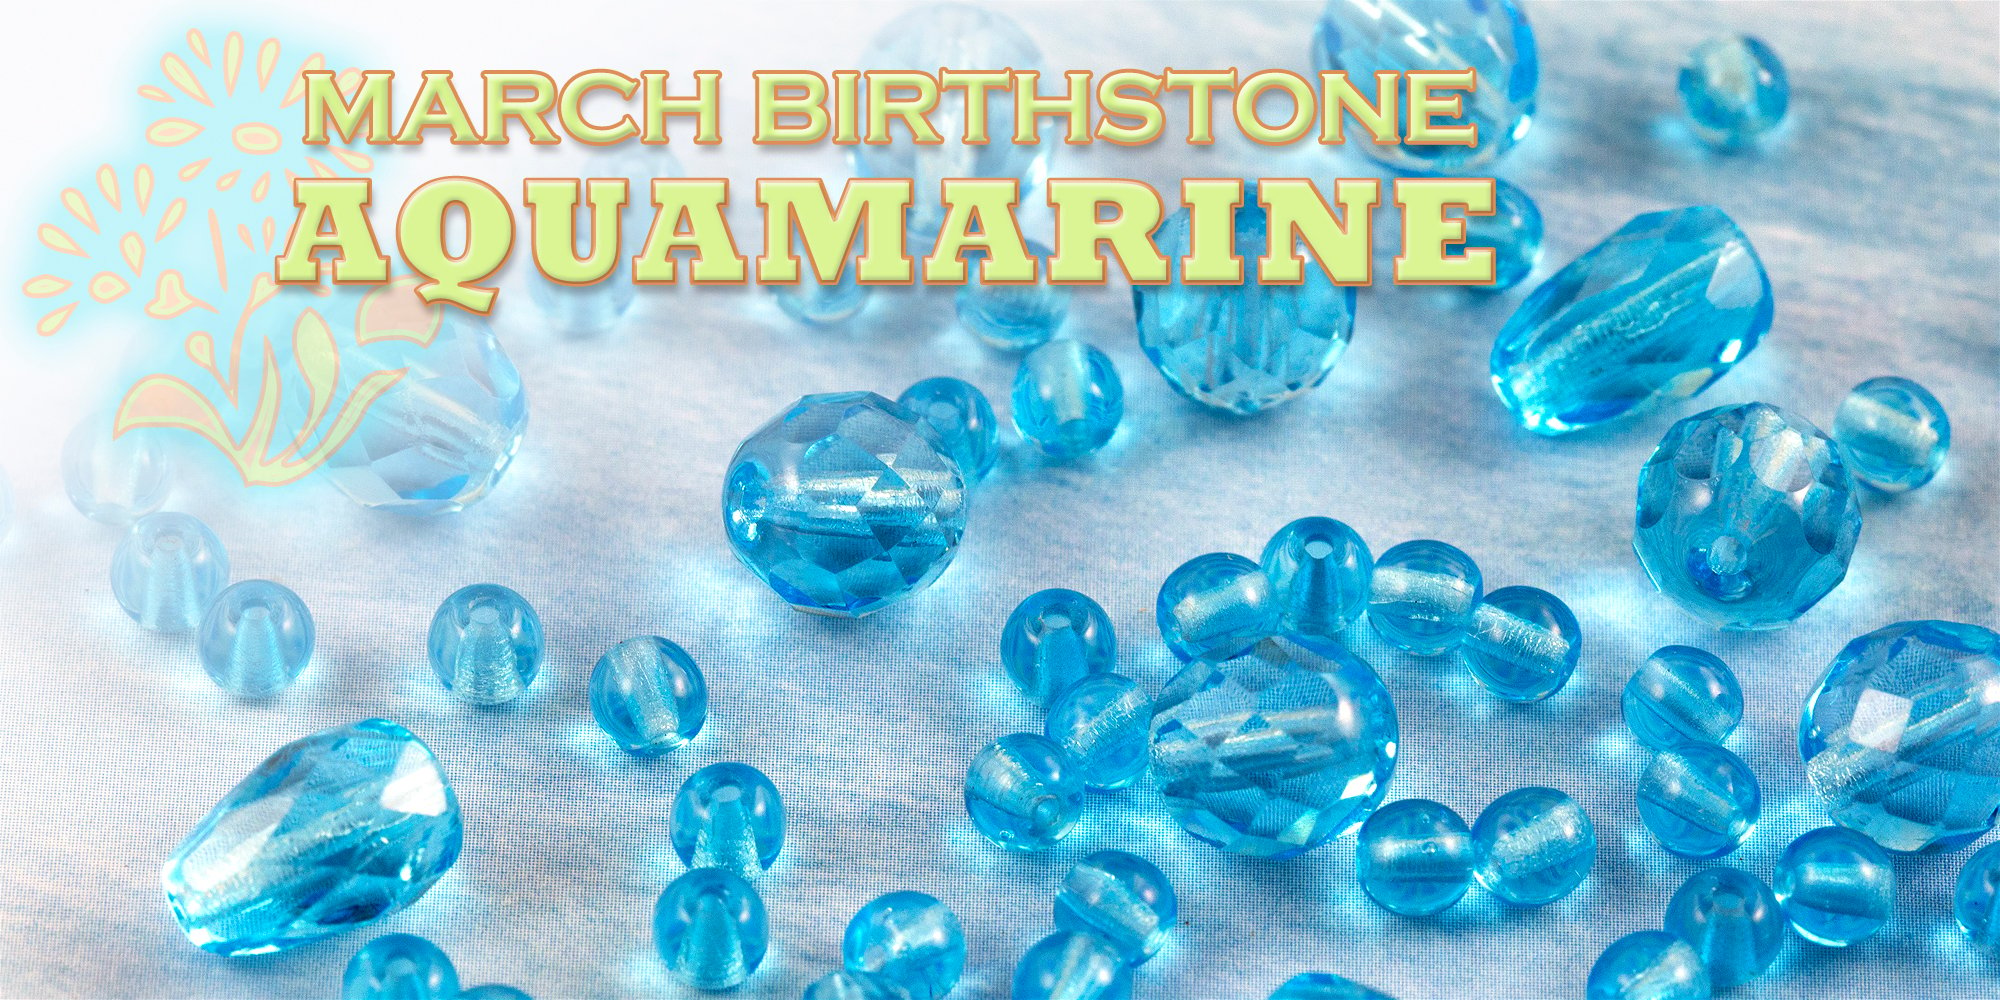 March Birthstone - Aquamarine